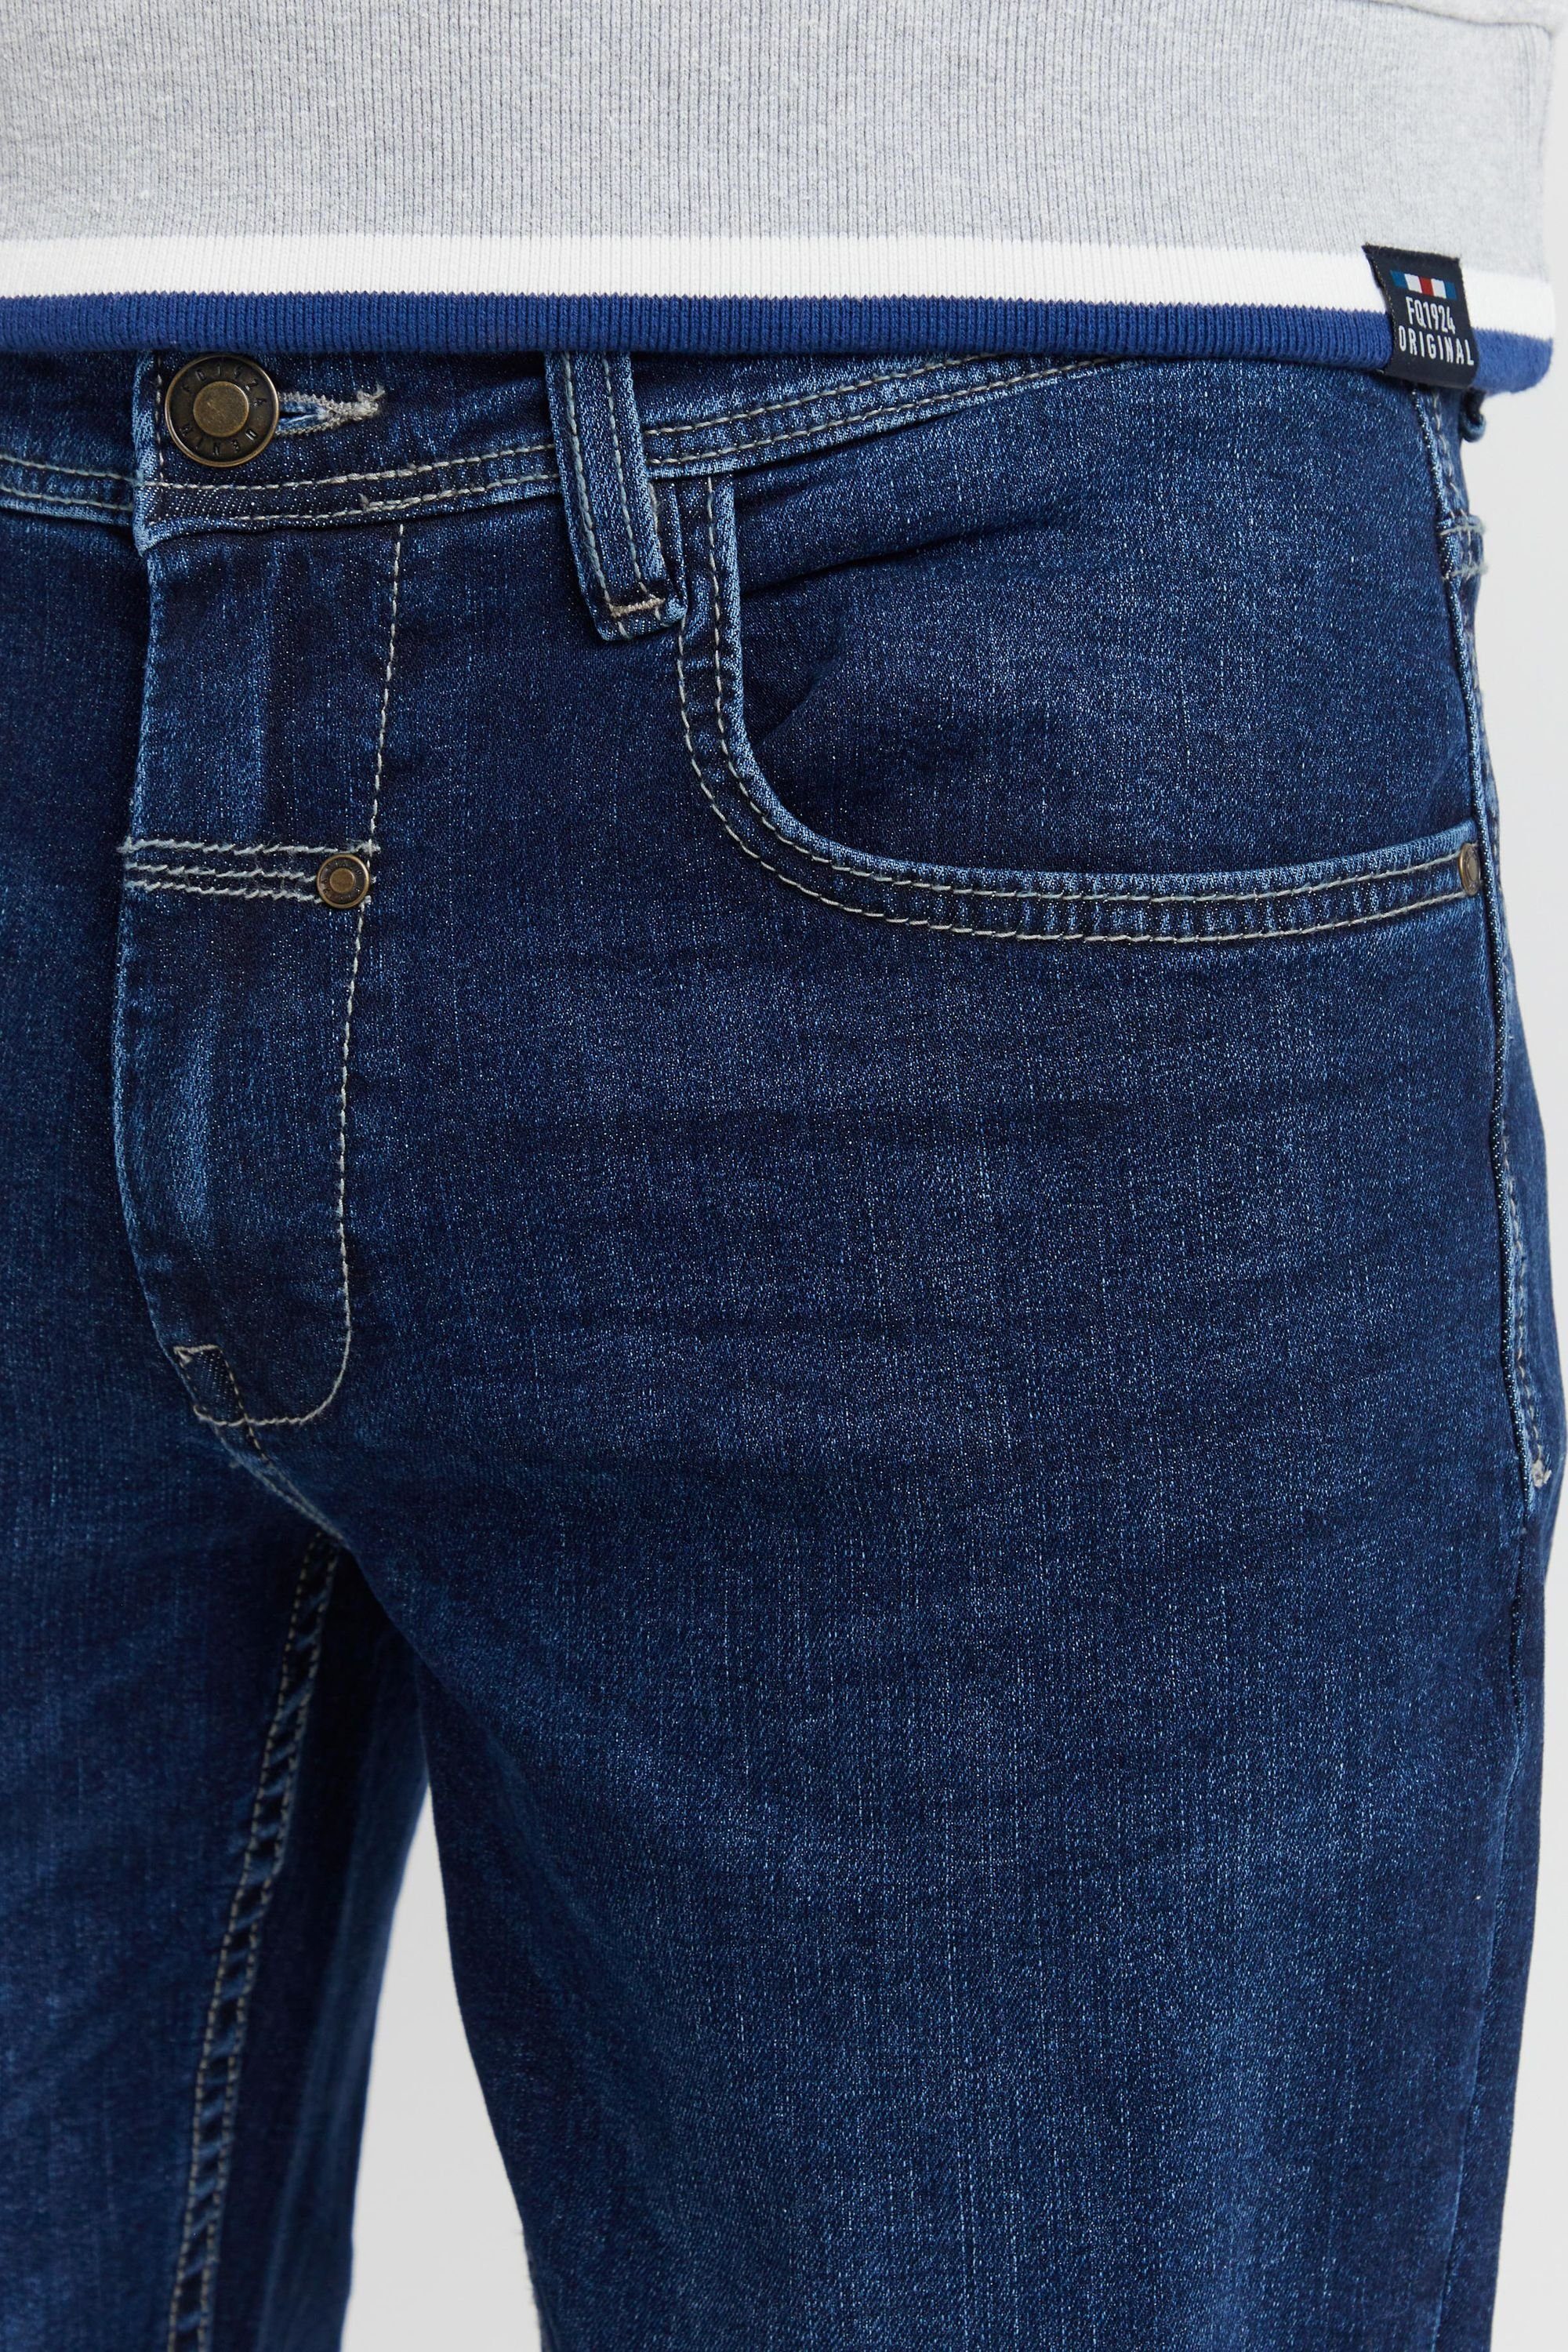 FQRoman Denim FQ1924 dark blue FQ1924 5-Pocket-Jeans